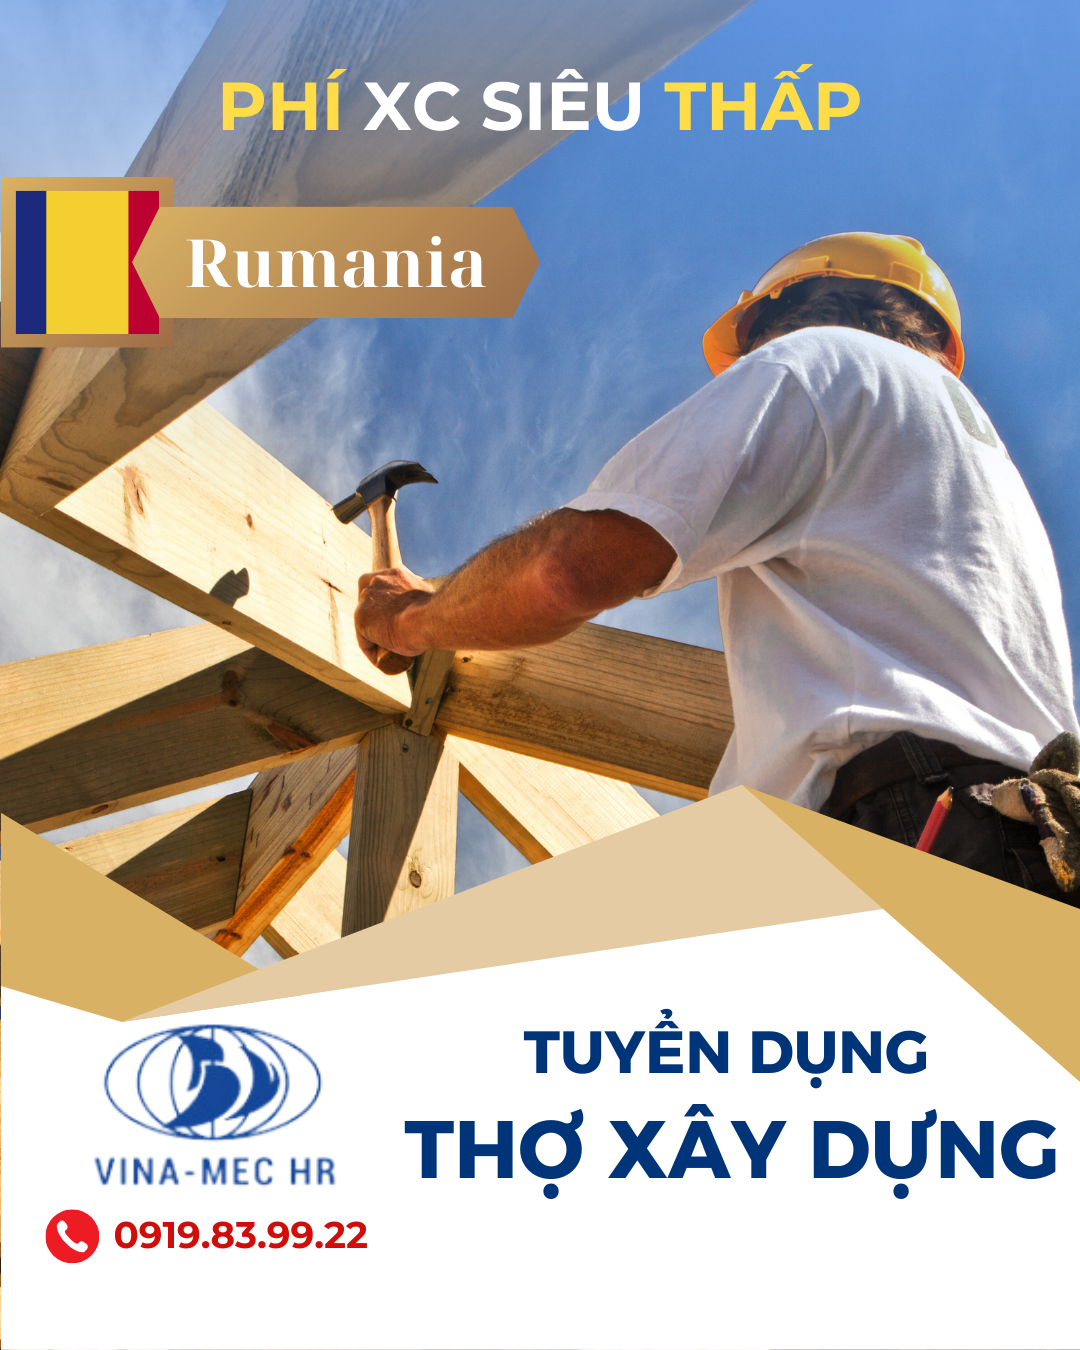 Tuyển thợ xây dựng đi làm việc tại Rumani